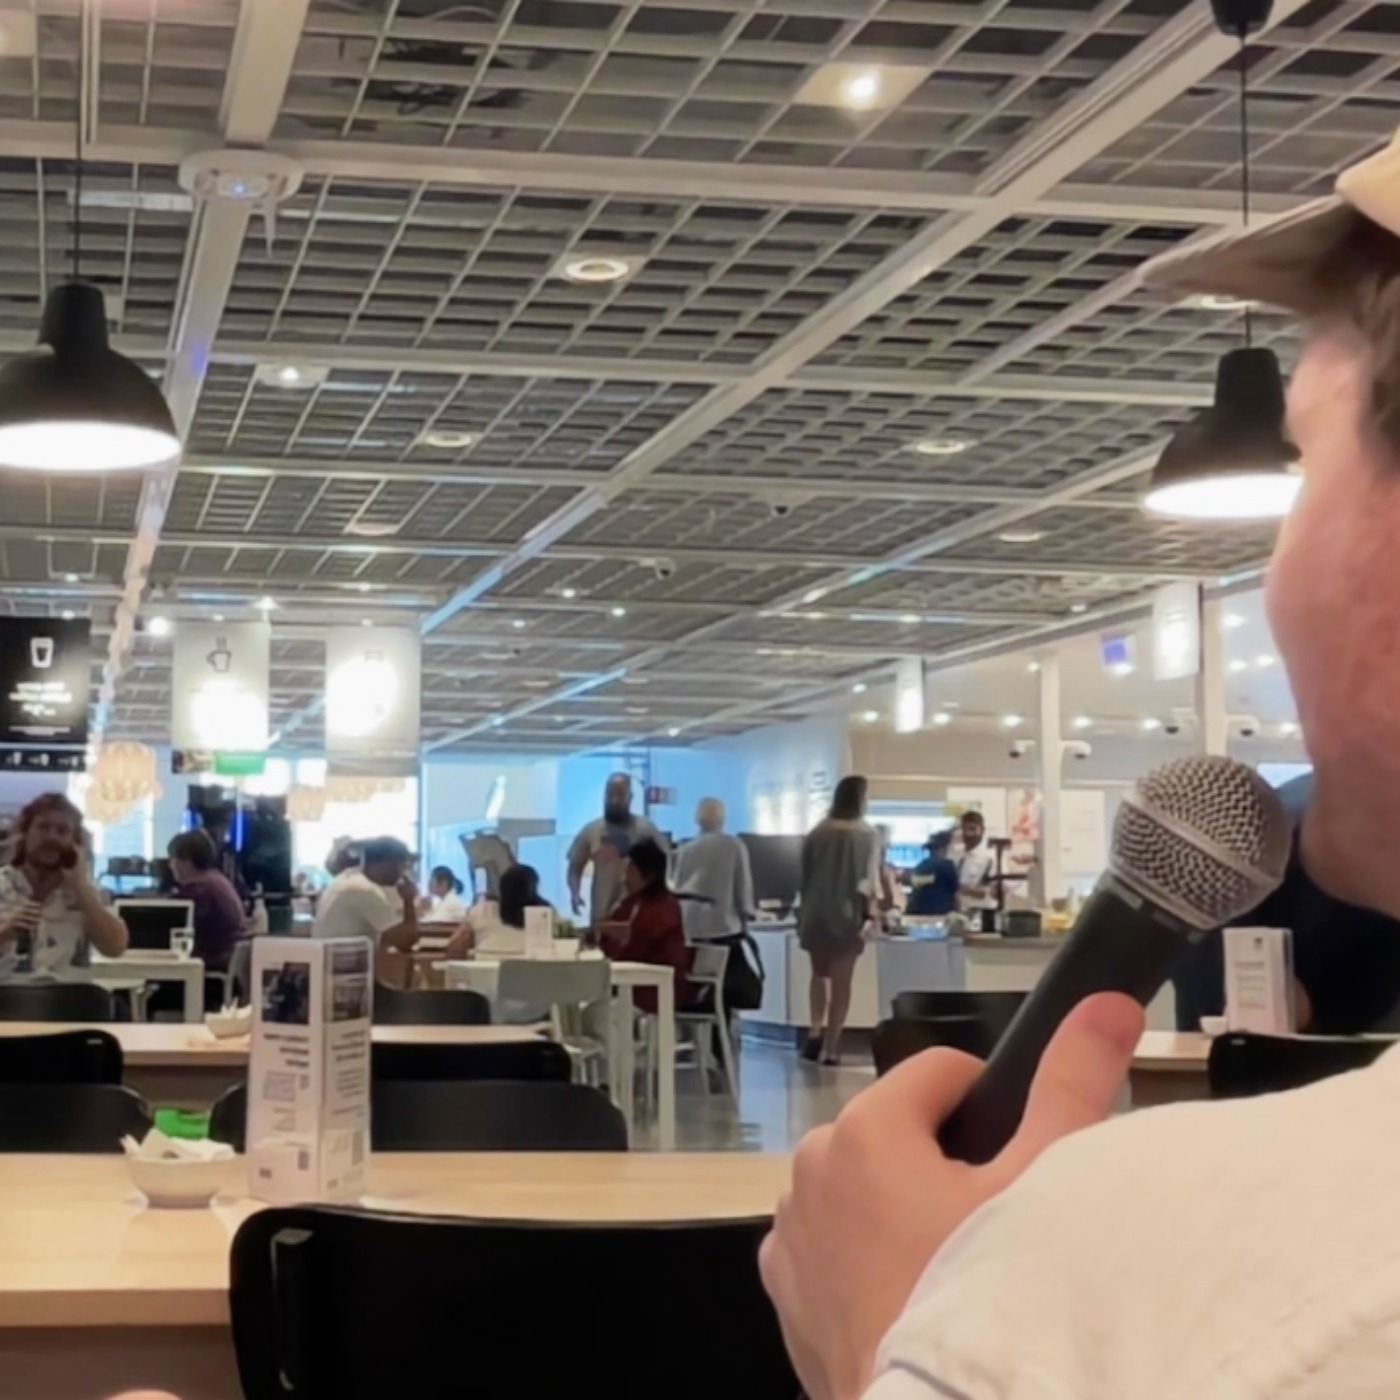 Luke Kidgell in an IKEA food court